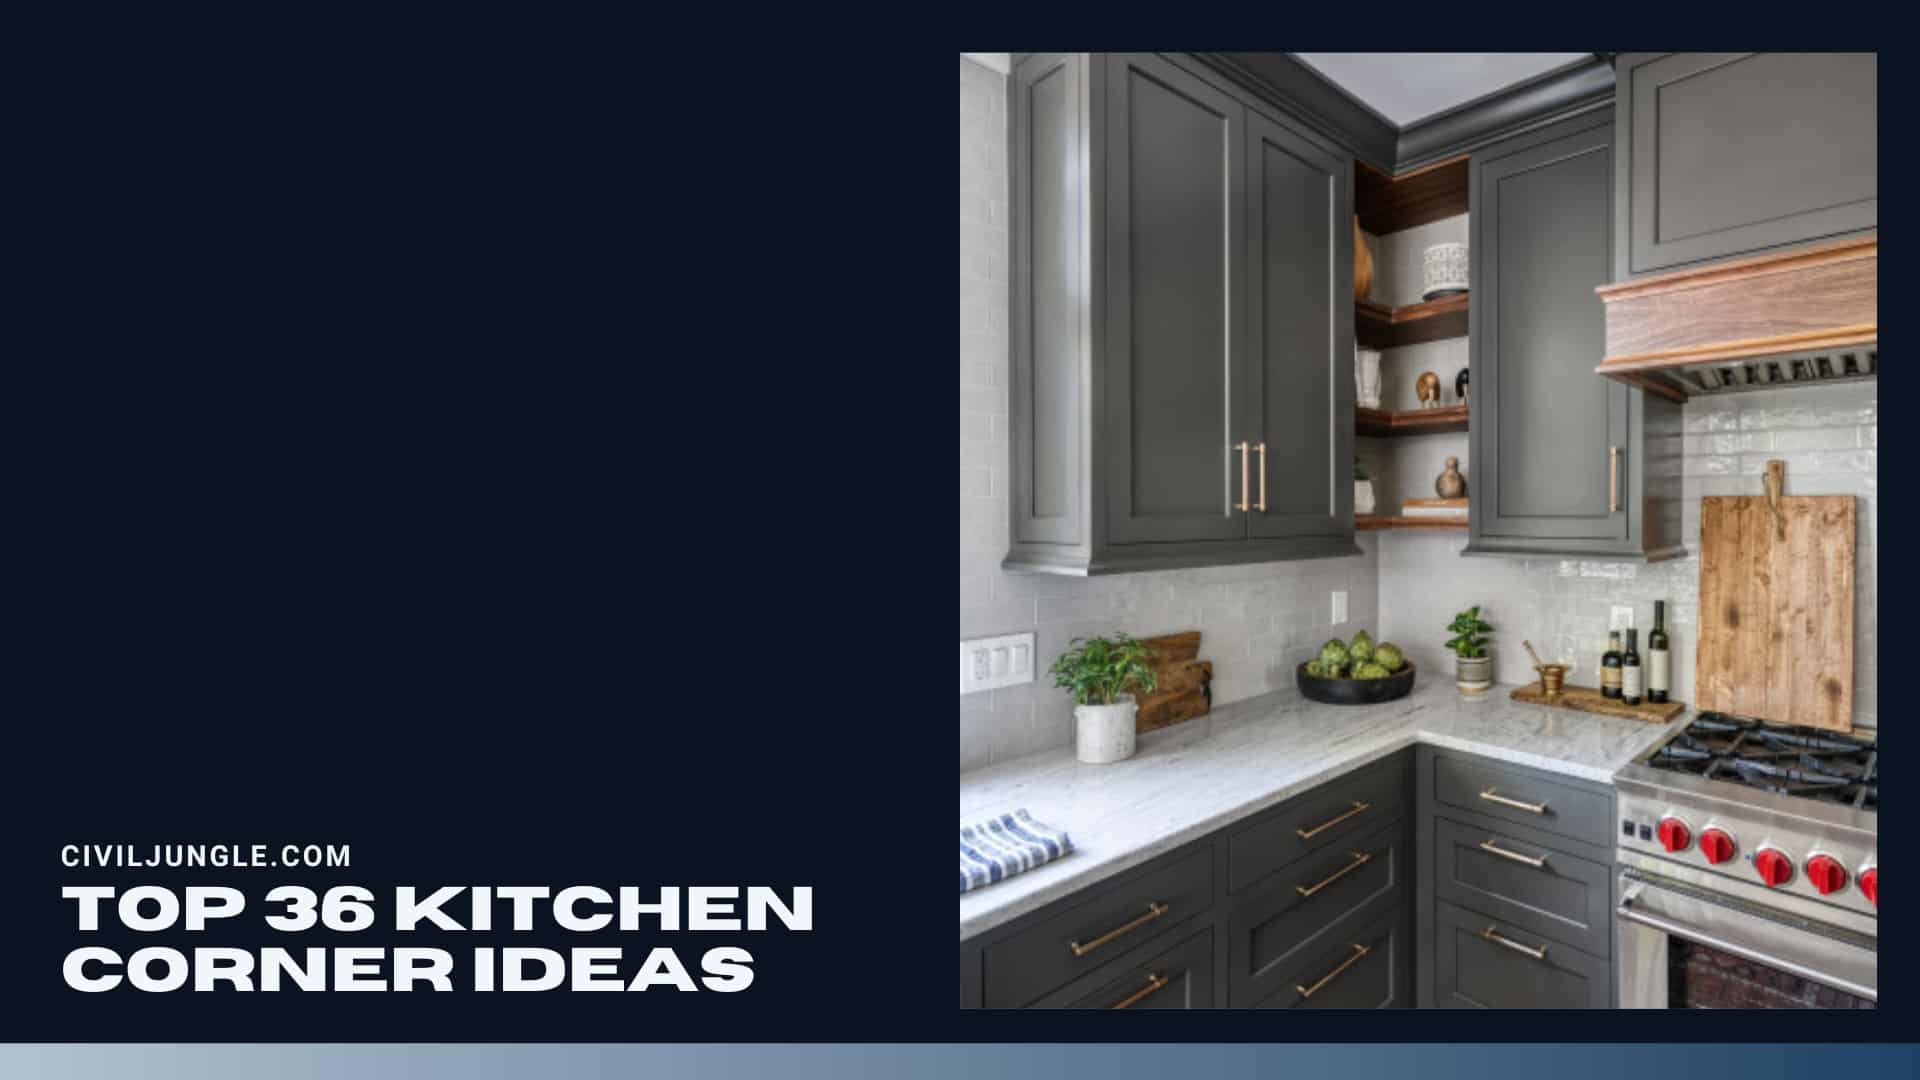 Top 36 Kitchen Corner Ideas